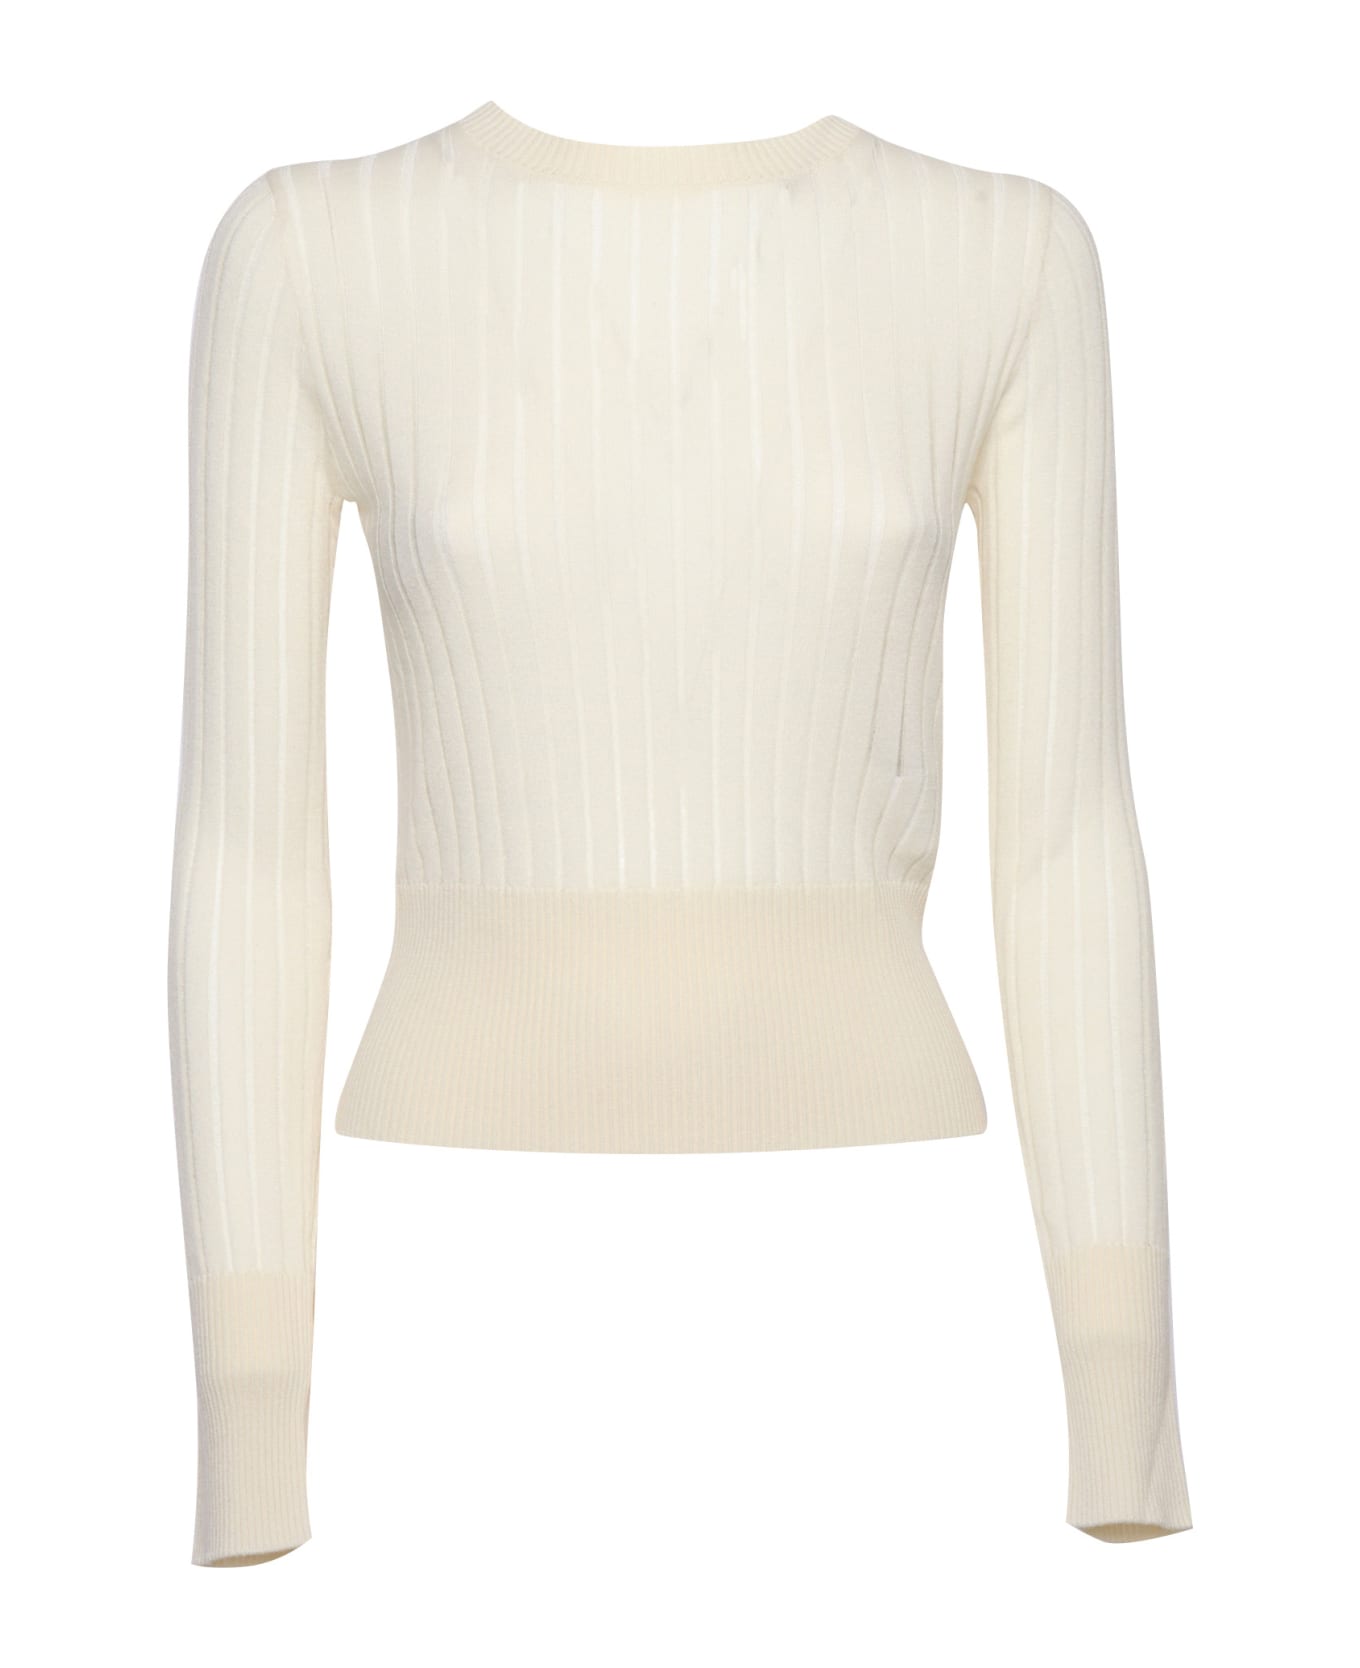 Max Mara Studio Funale Sweater - WHITE ニットウェア